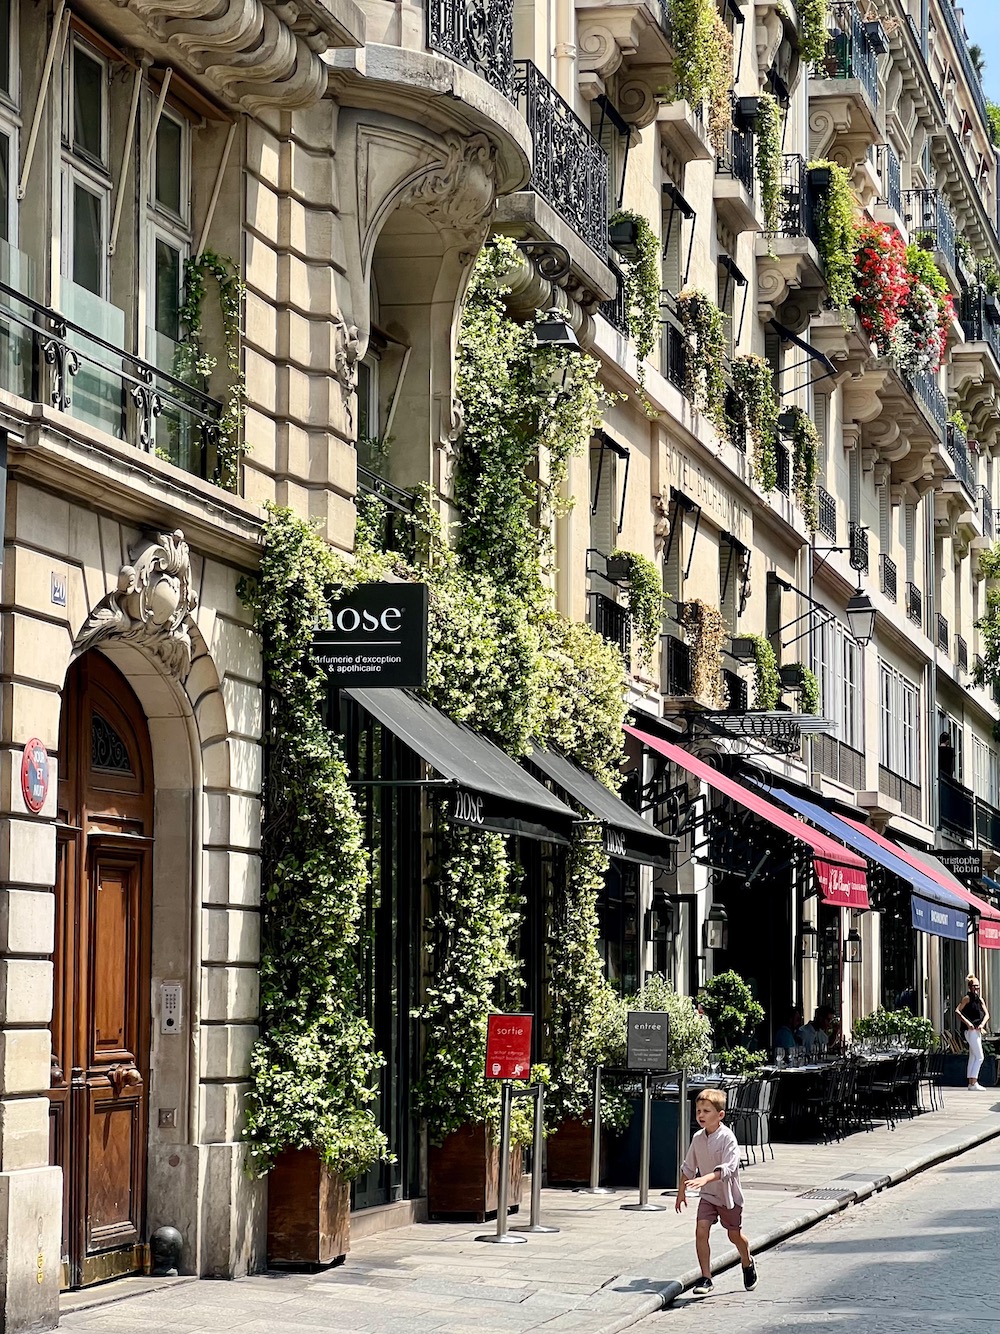 parisian facade with greenery weekend links week 26